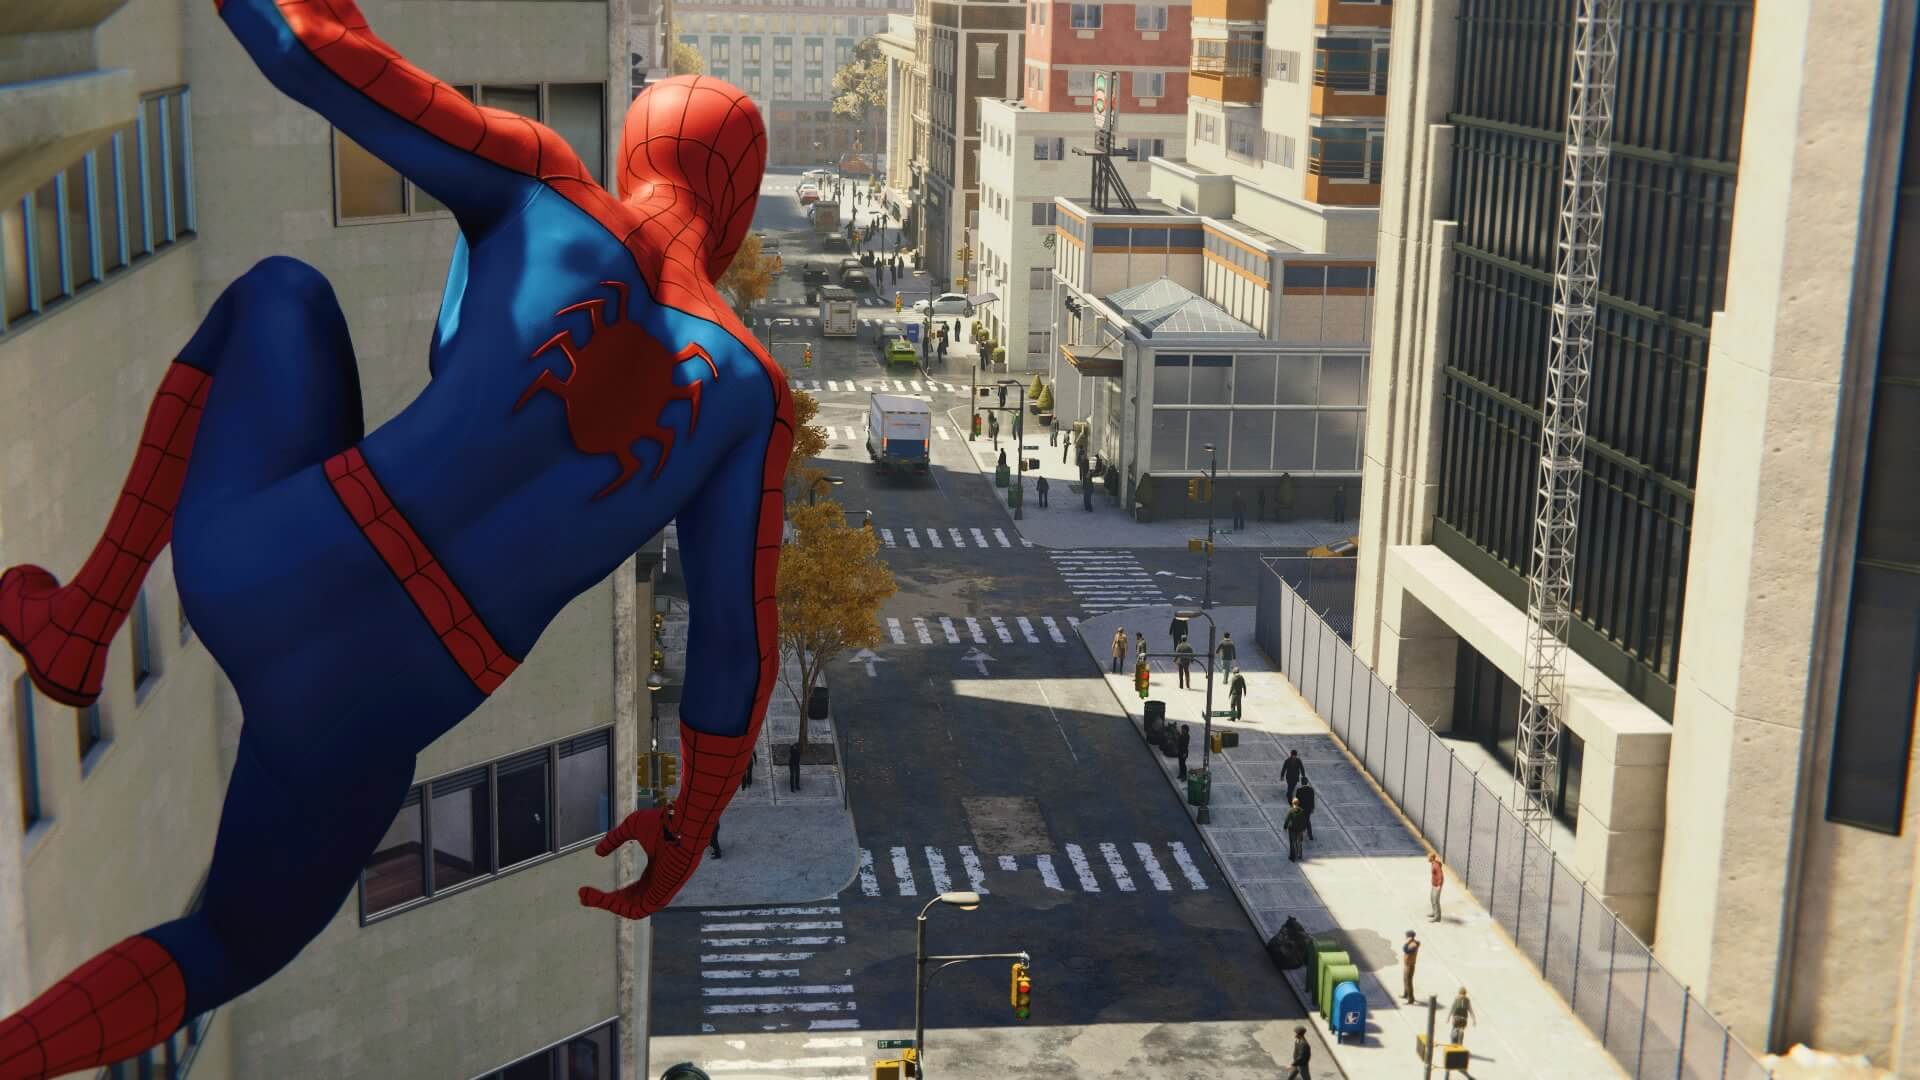 Review: Spider-Man: Miles Morales capricha na diversão para novos fãs do  herói